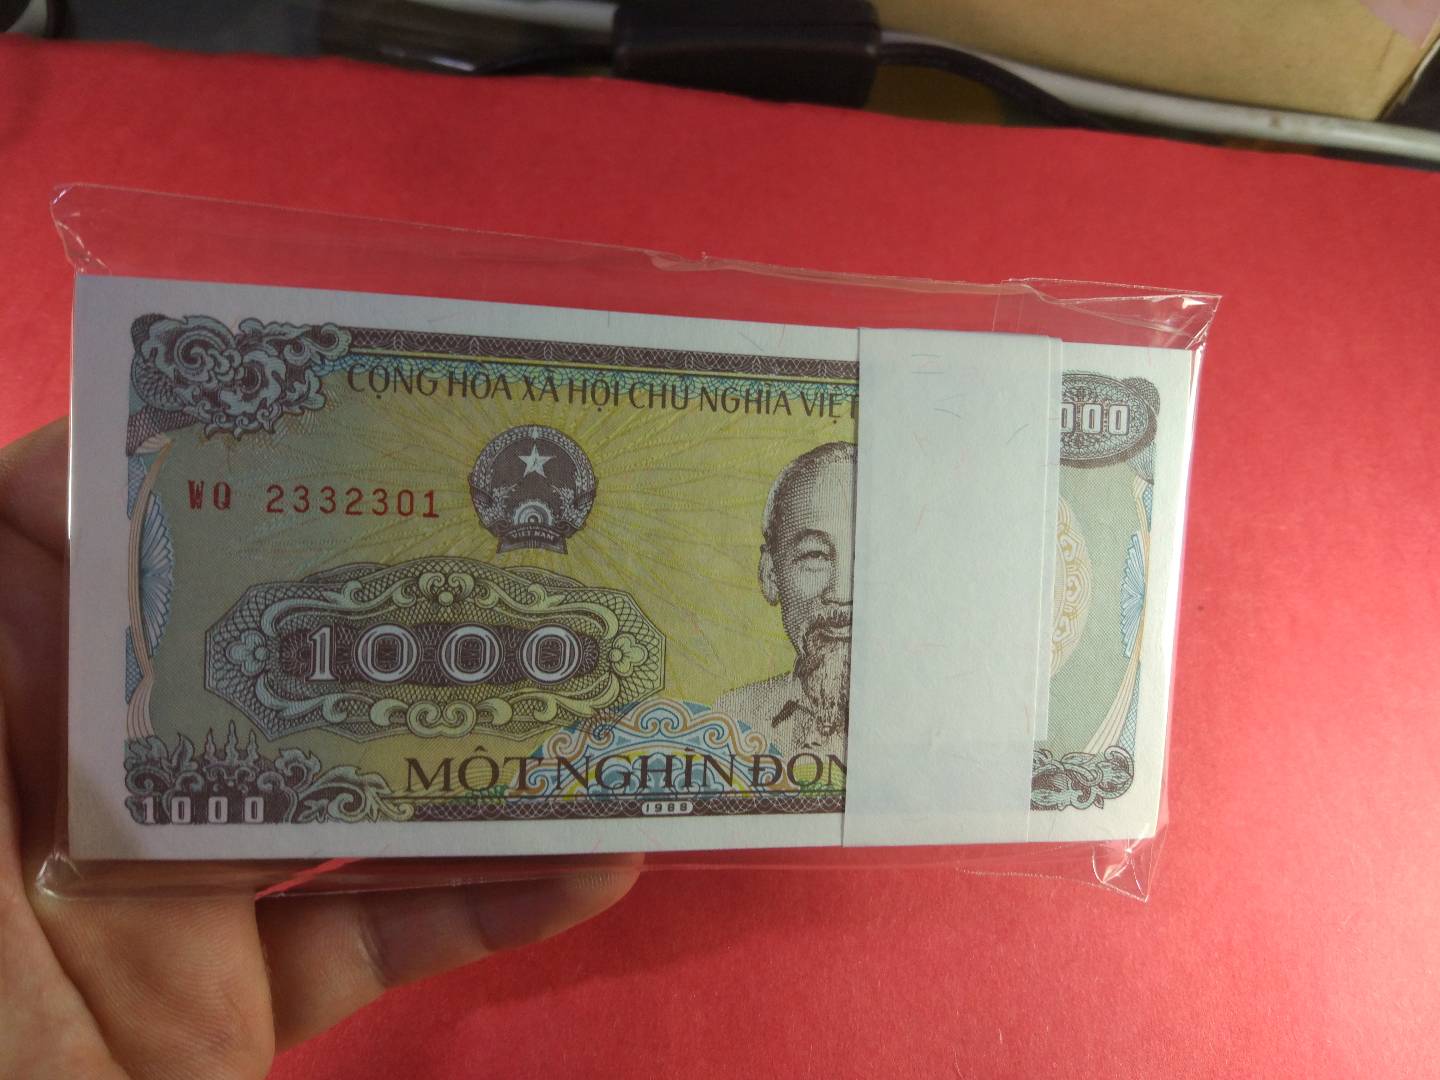 越南币1000图片欣赏图片